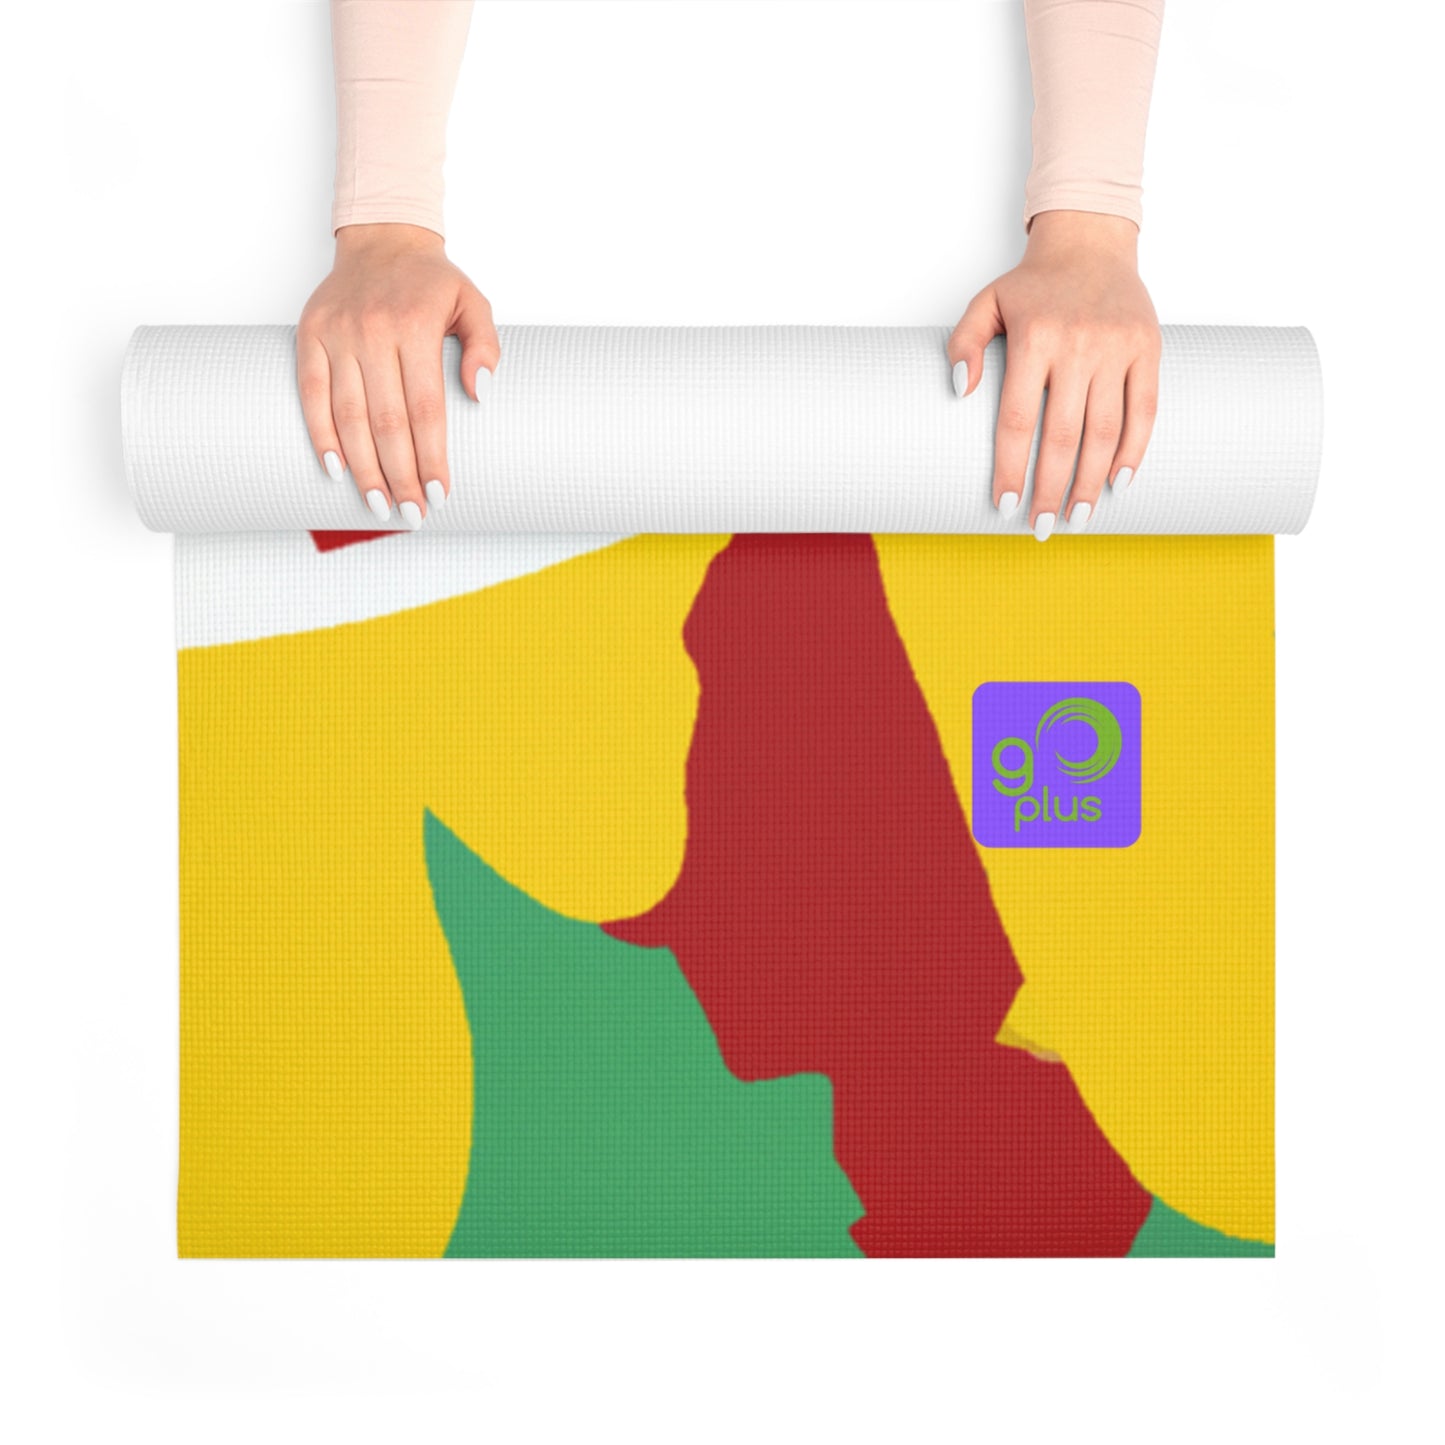 "Show Your True Colors: an Artpiece Celebrating Sports Teams" - Go Plus Foam Yoga Mat